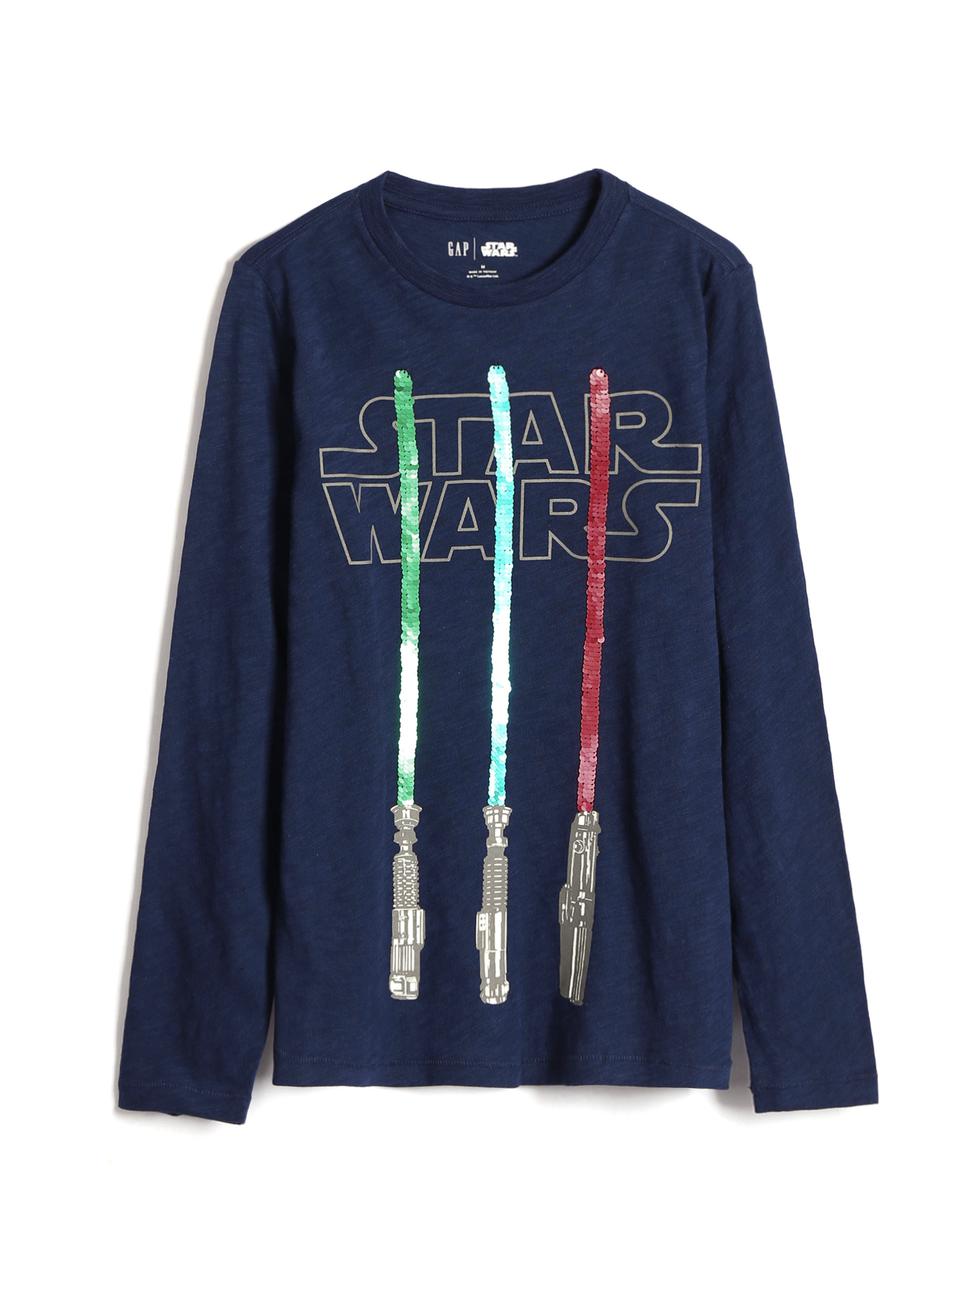 男童裝|Gap x Star Wars星際大戰聯名 雙面亮片長袖T恤-海軍淺藍